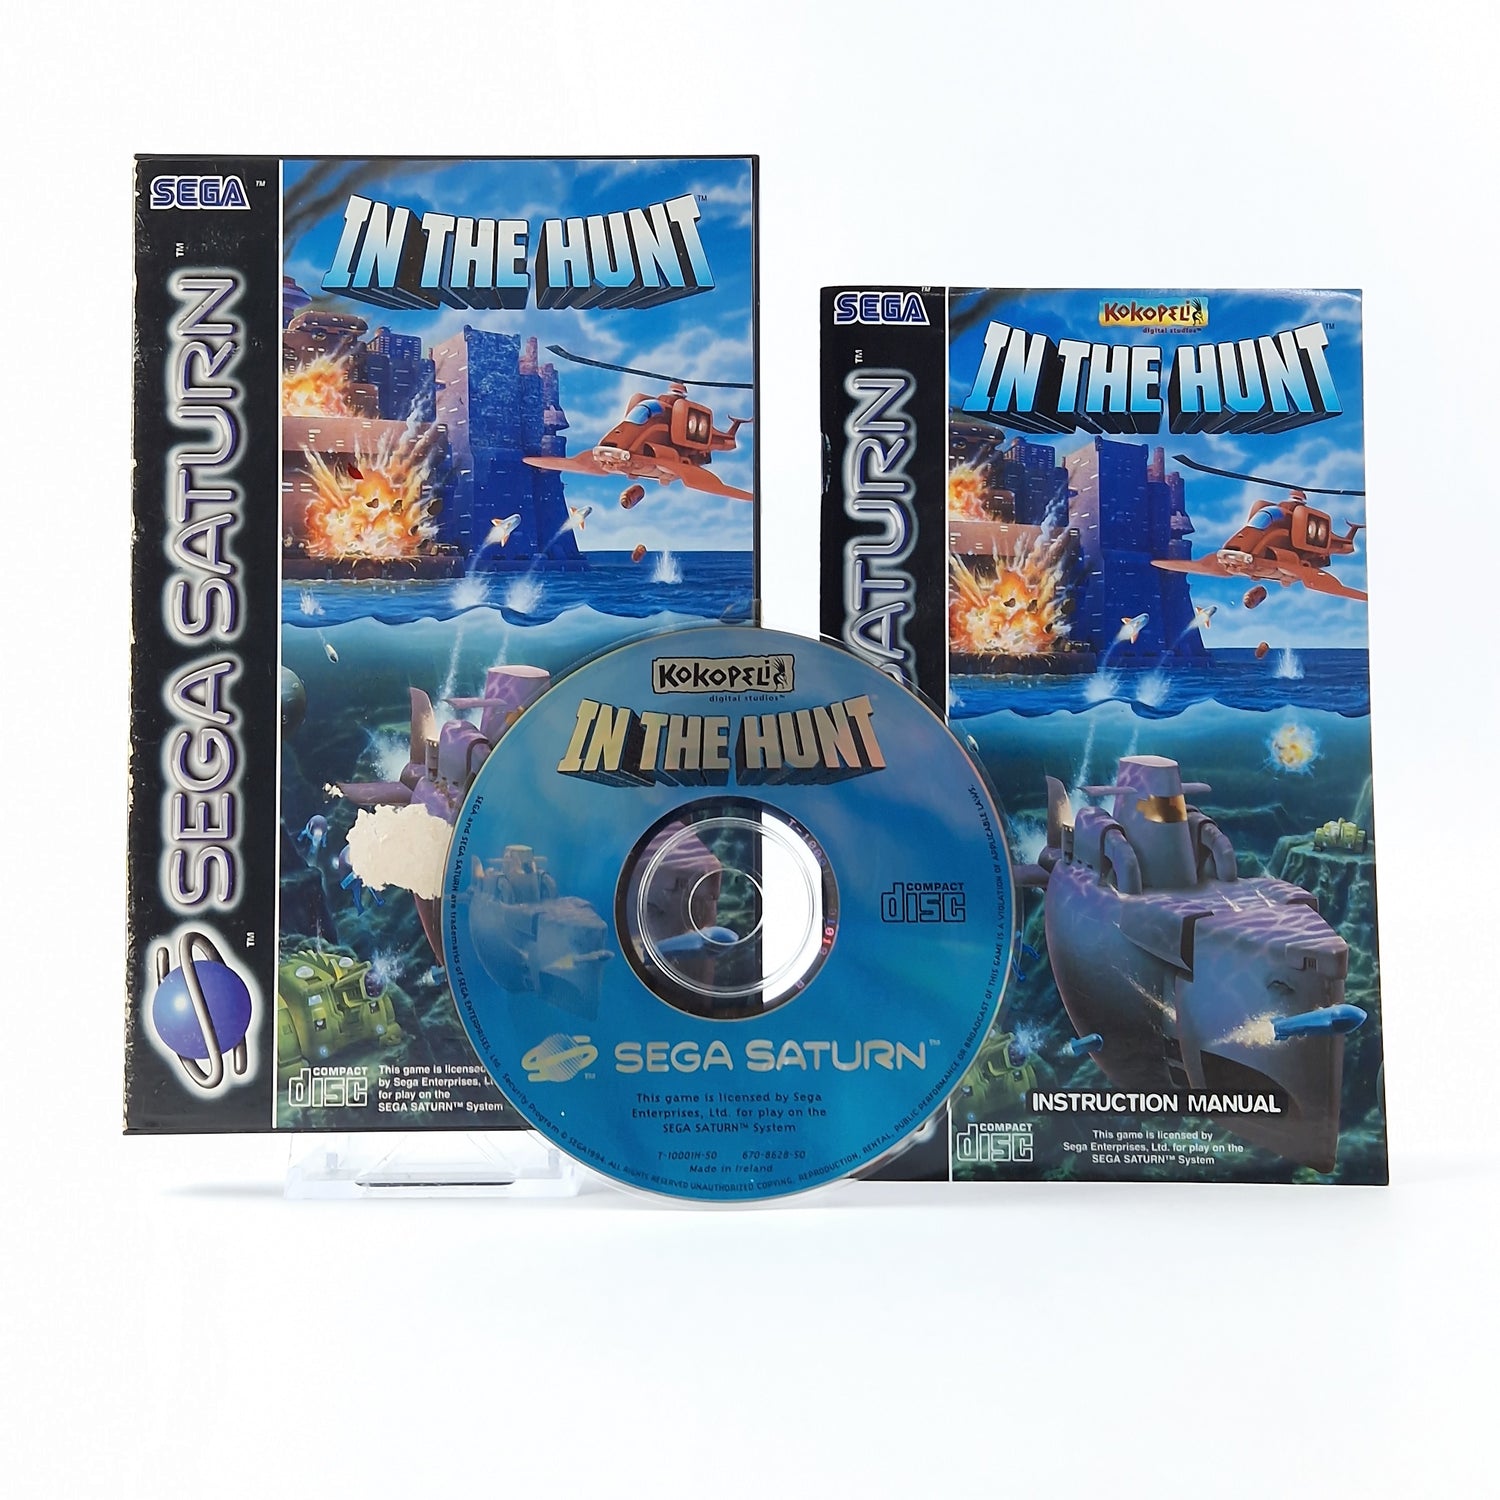 Sega Saturn Spiel : In The Hunt - OVP Anleitung CD PAL Disk System